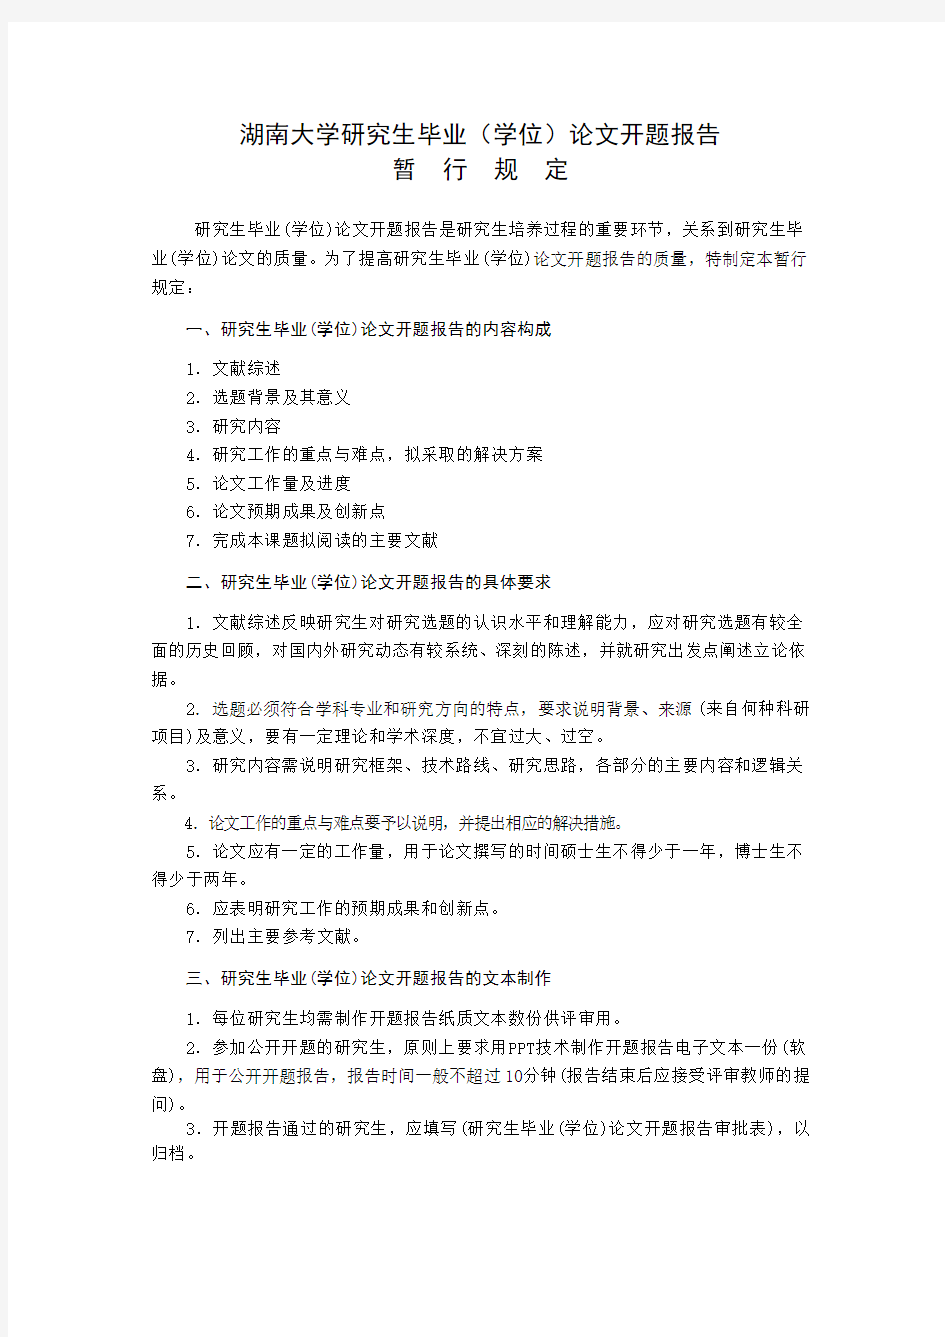 湖南大学开题报告模板(A4双面,1份)